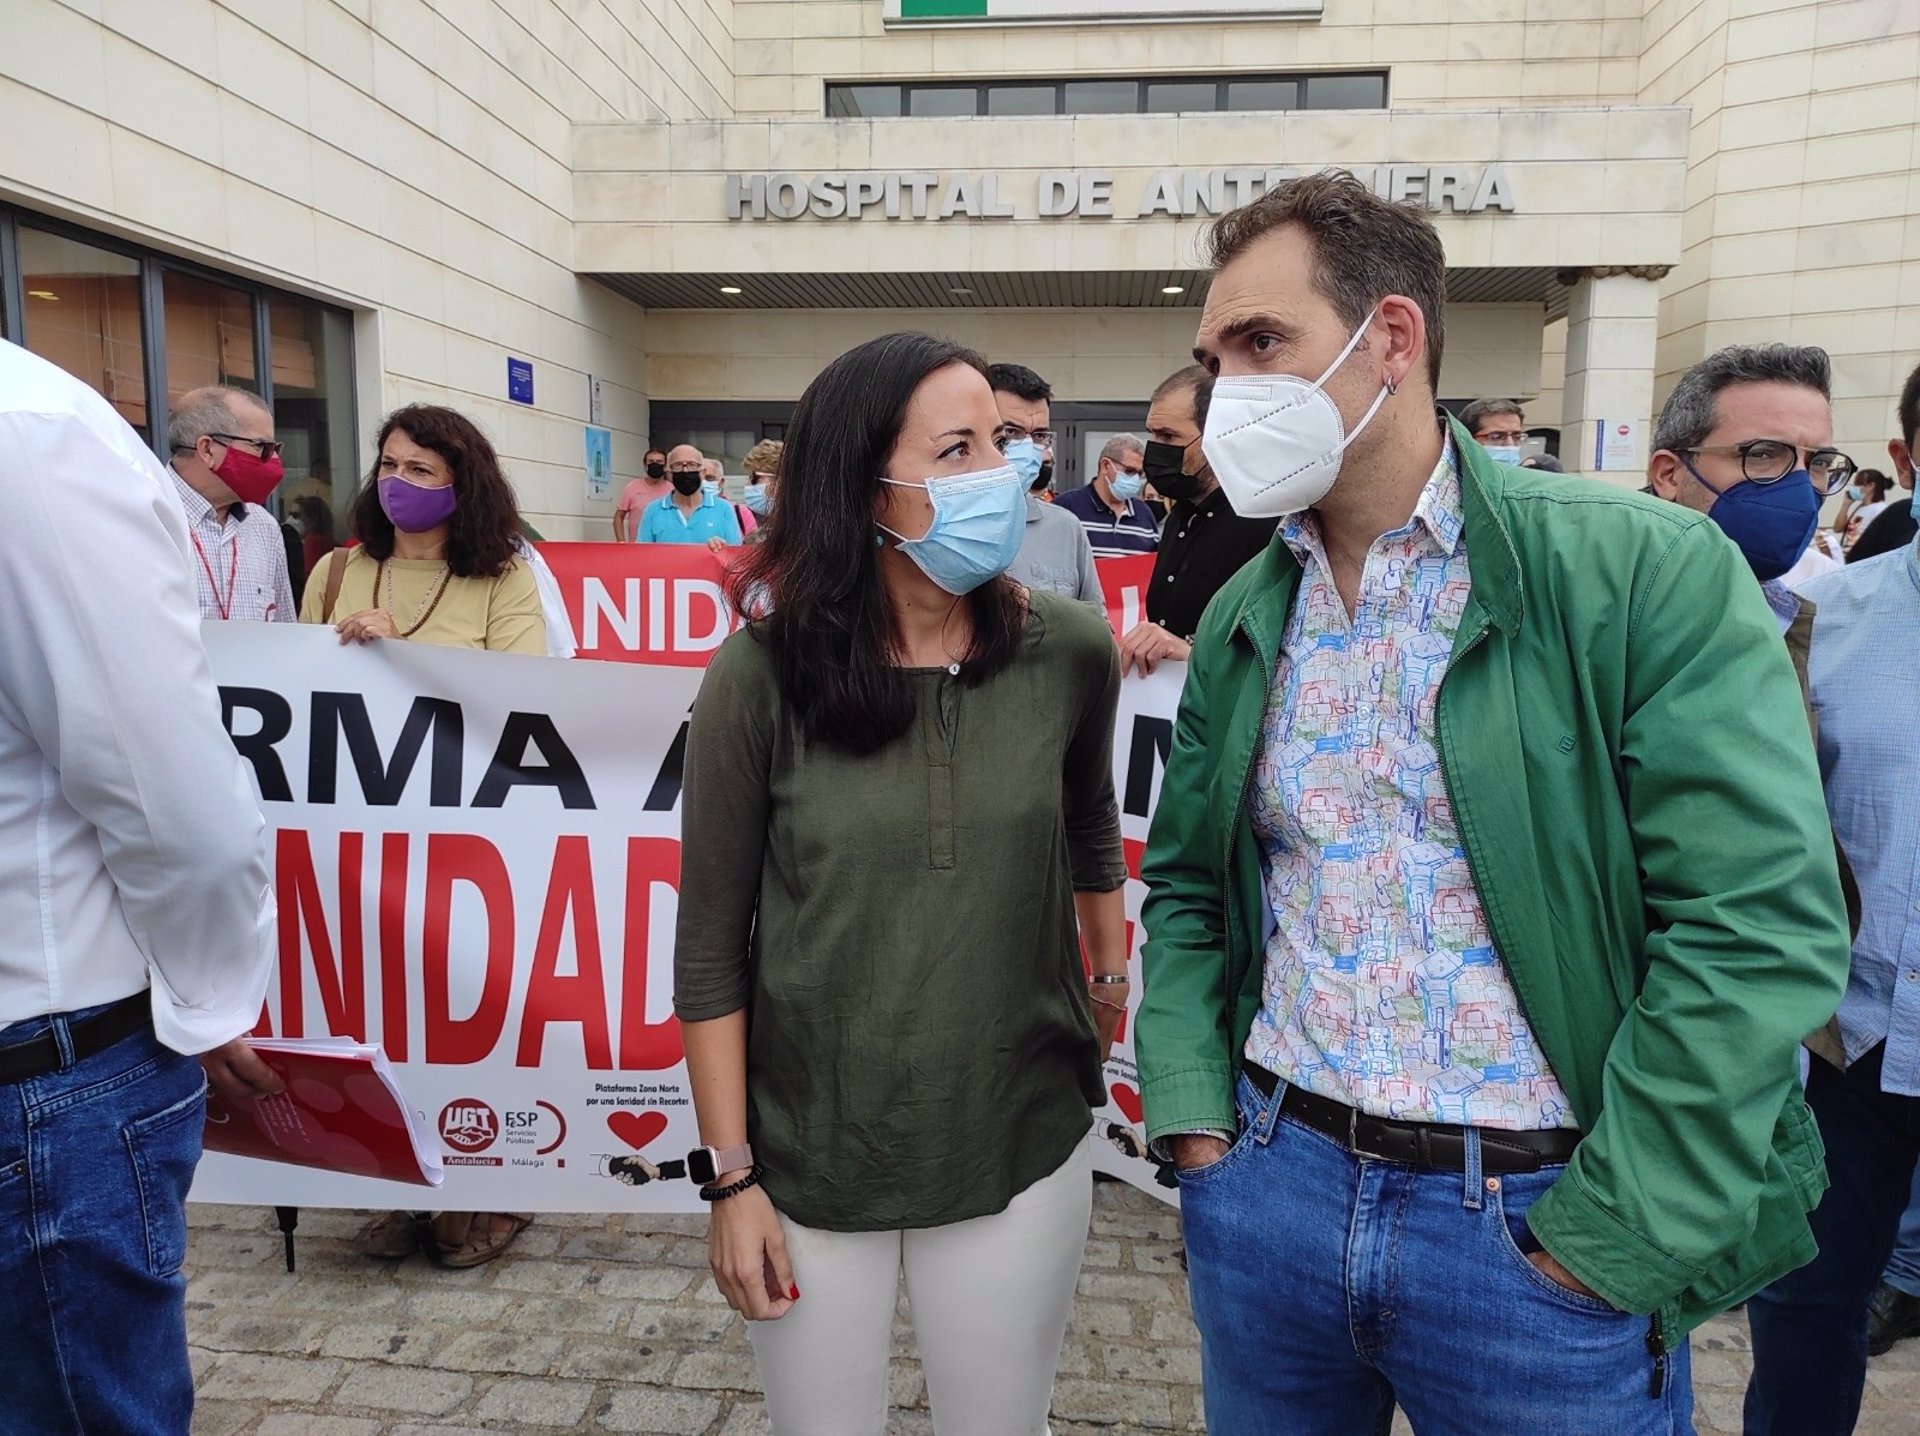 Valero avisa de que Andalucía se va a movilizar ante el «deterioro» de la sanidad pública: «Este pulso lo vamos a ganar»